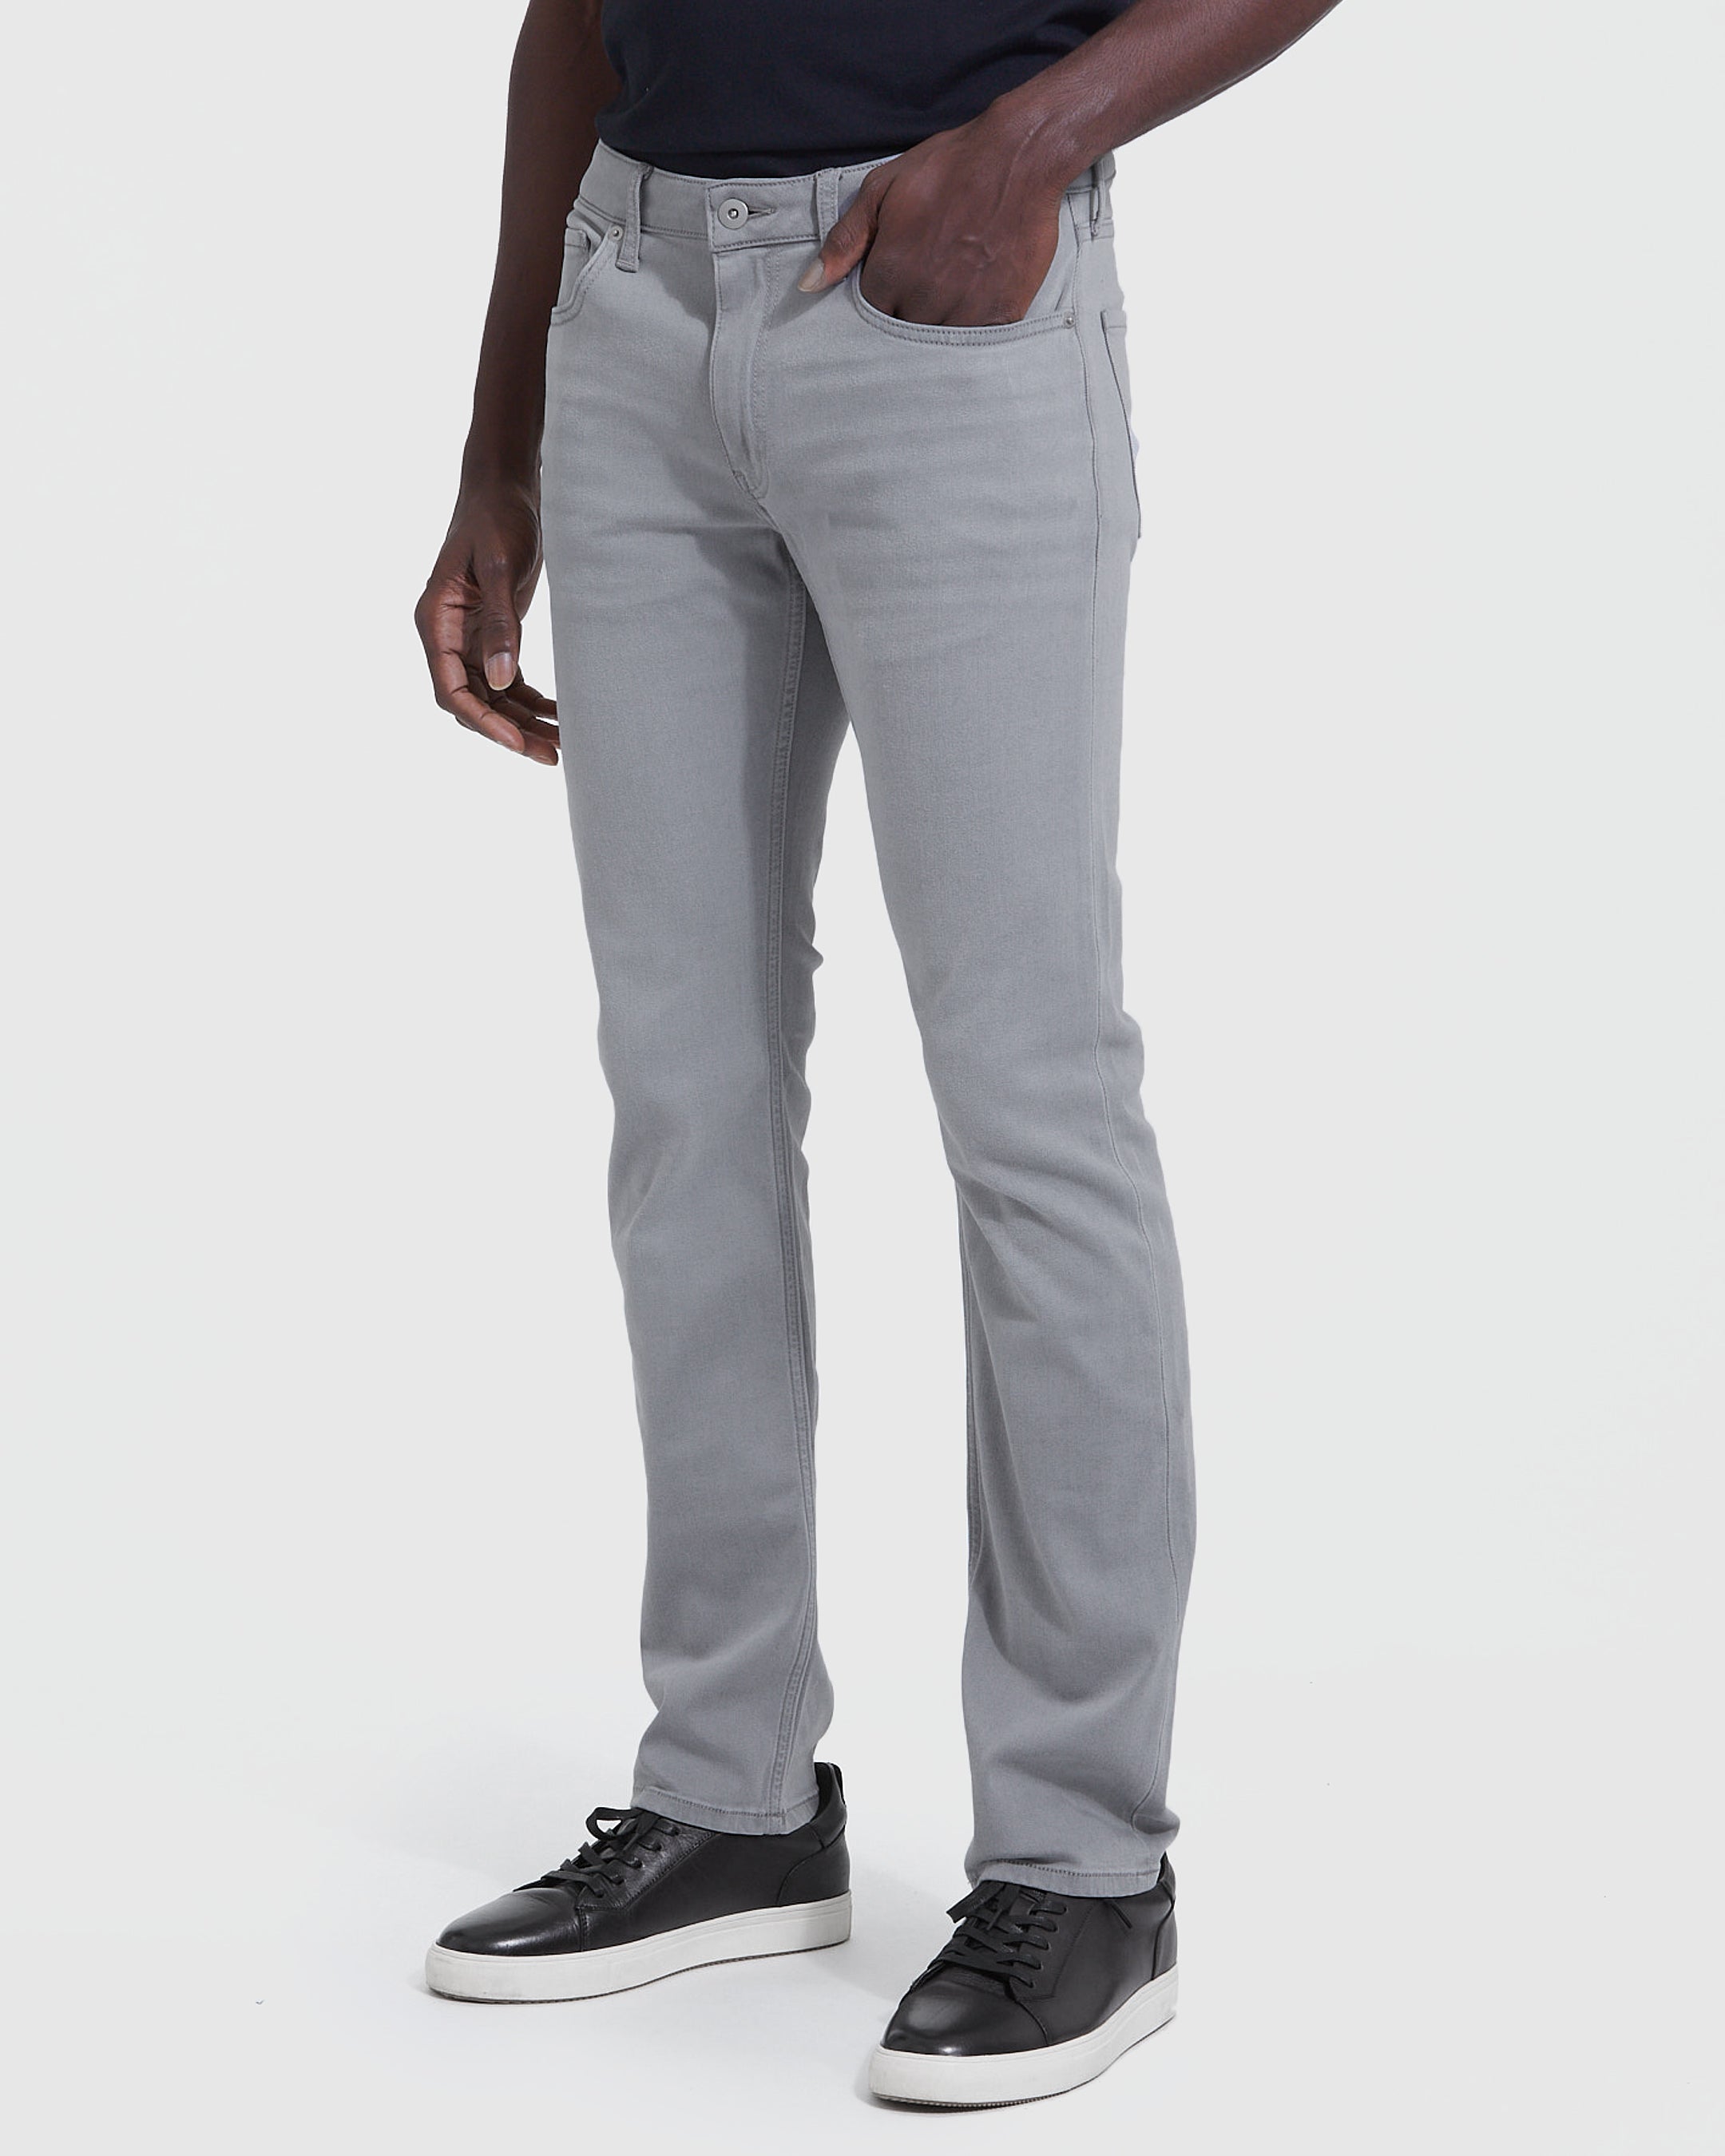 Medium Gray Wash Jeans Fit True Classic – Slim Comfort